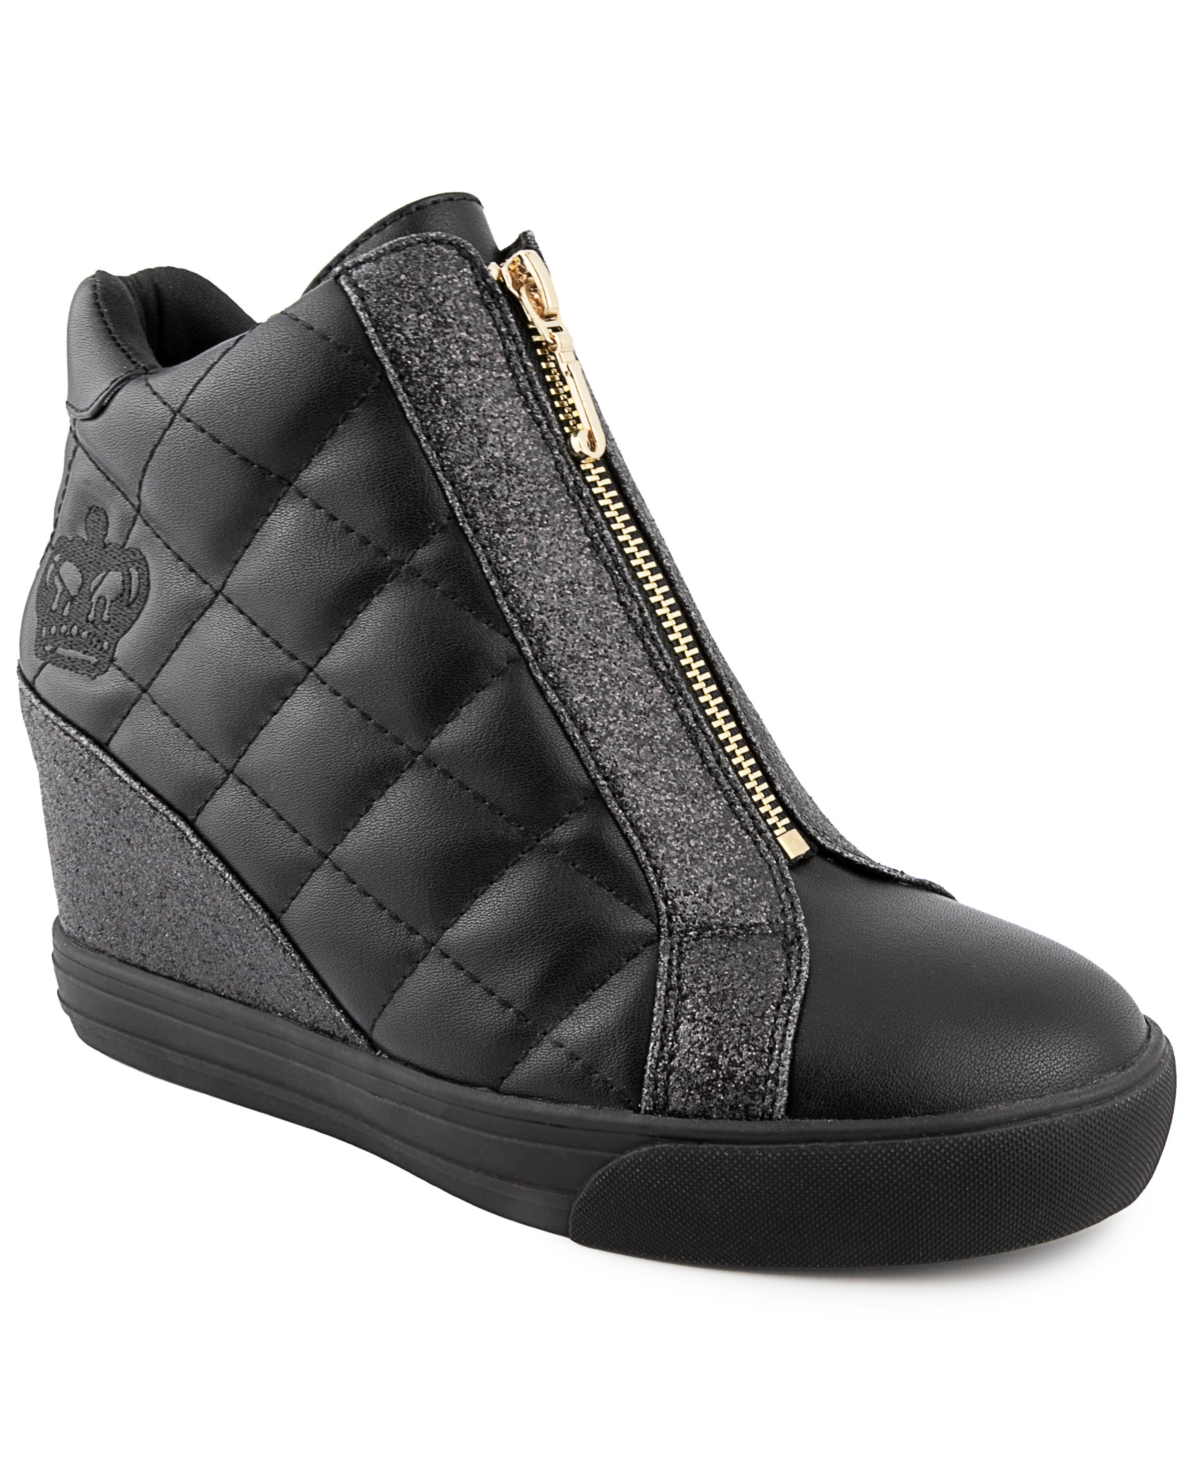 Juicy Couture Women's Jordie Wedge Sneaker Reviews - Shoes & Sneakers - Shoes - Macy's